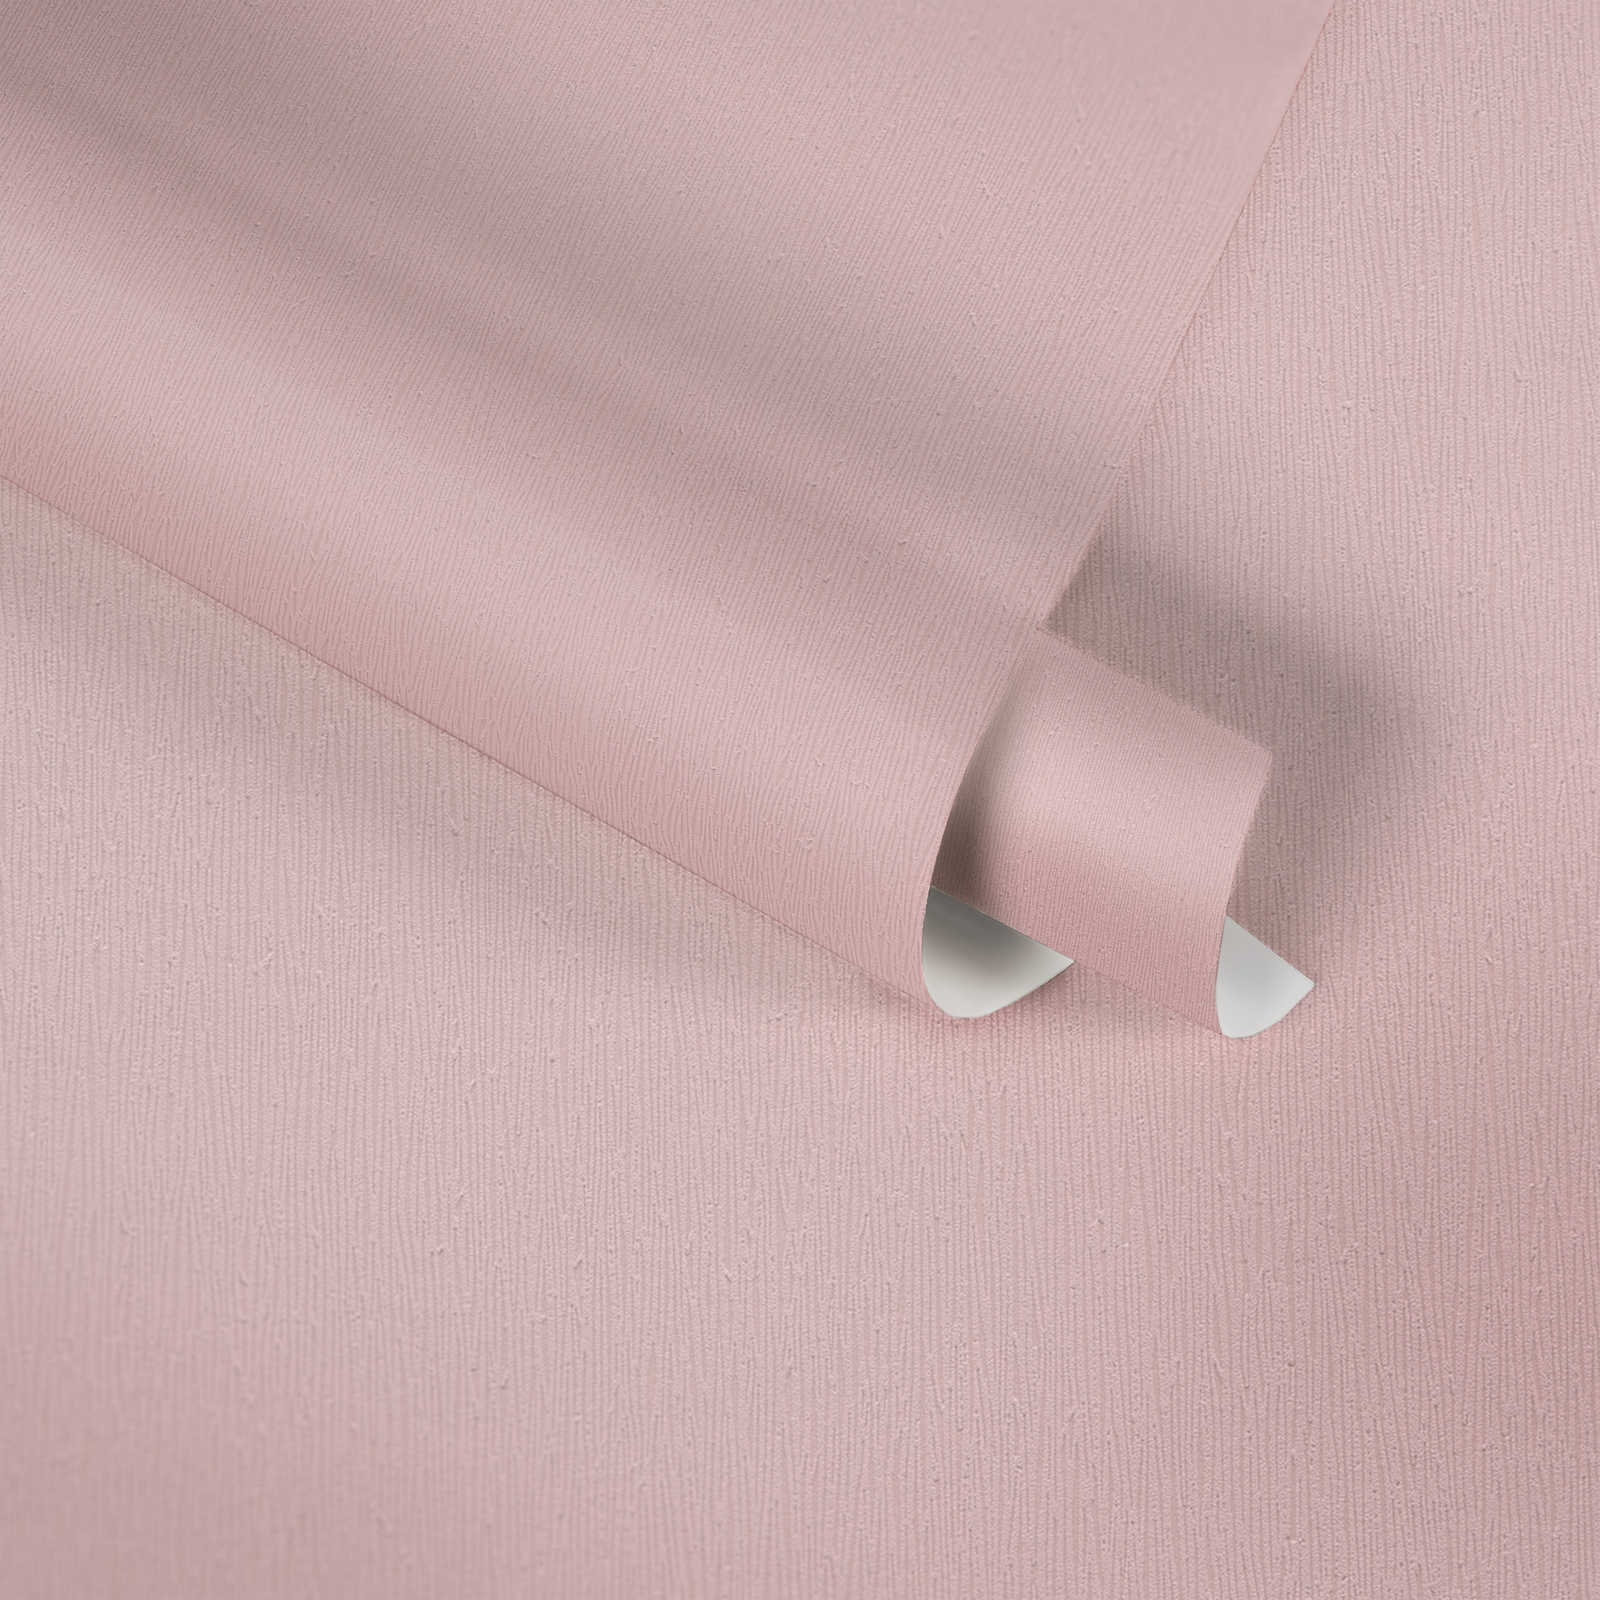             Papel pintado no tejido de color rosa bebé con diseño texturizado monocromático - Rosa
        